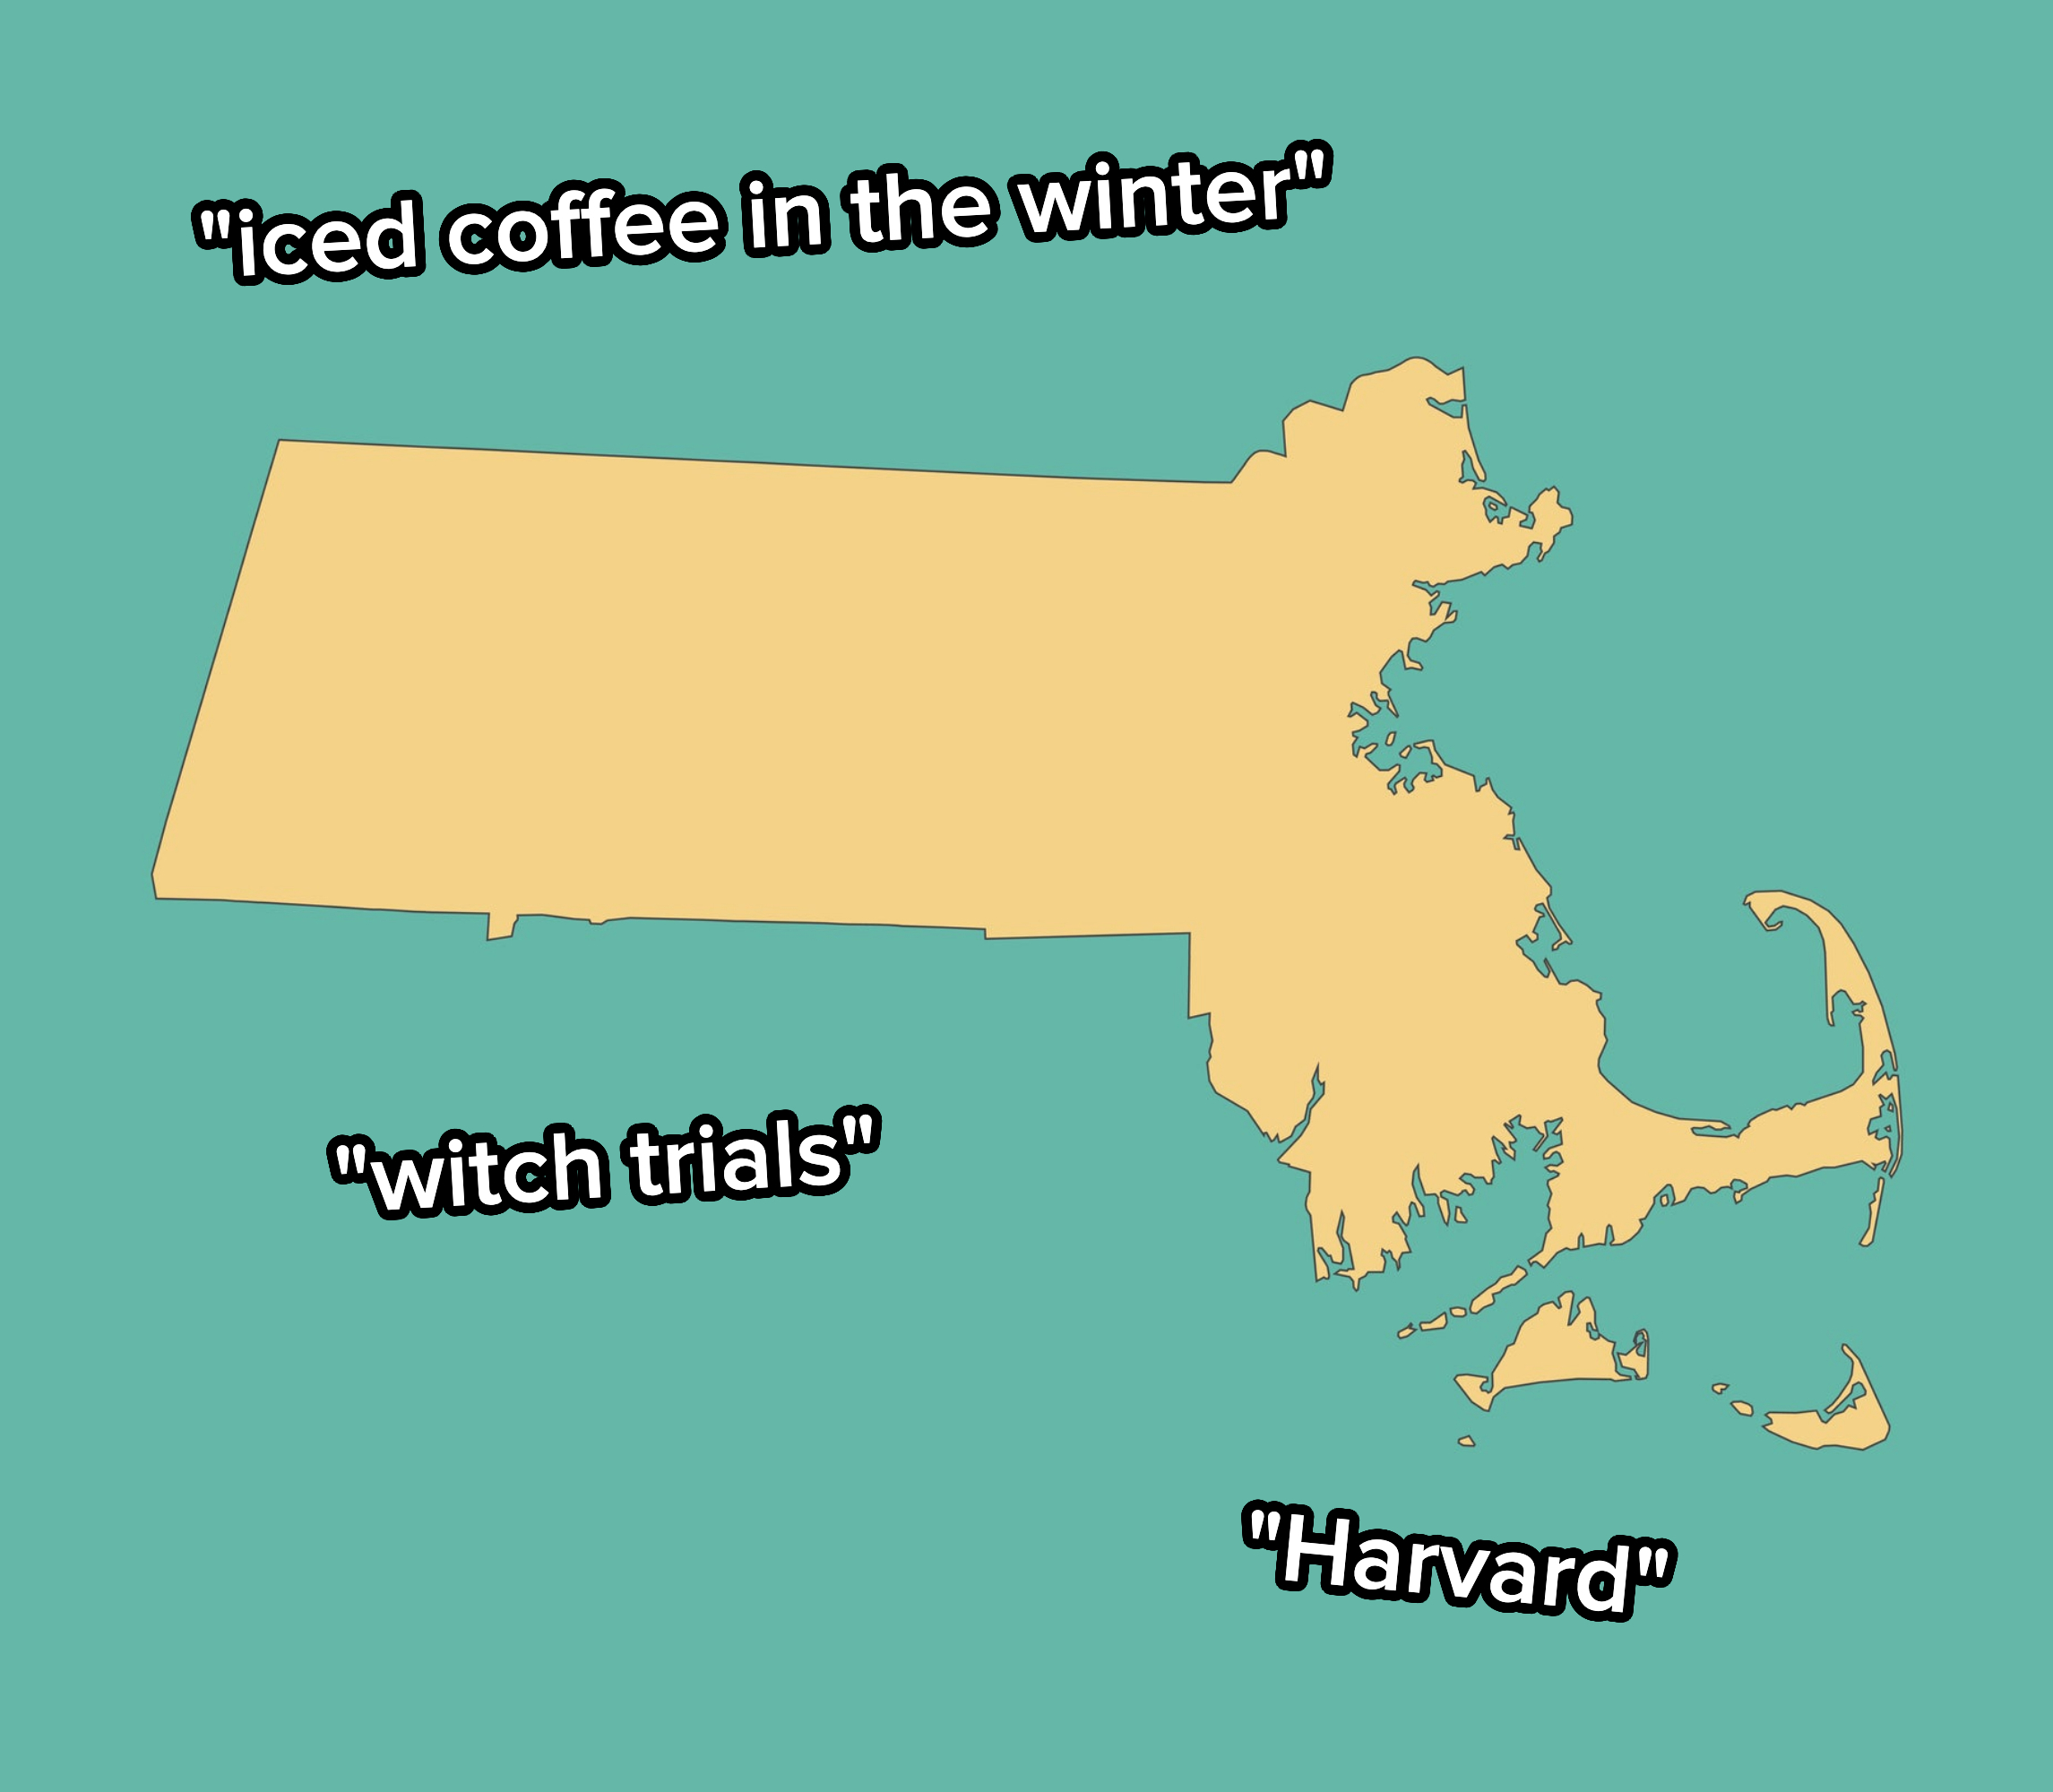 Massachusetts outline